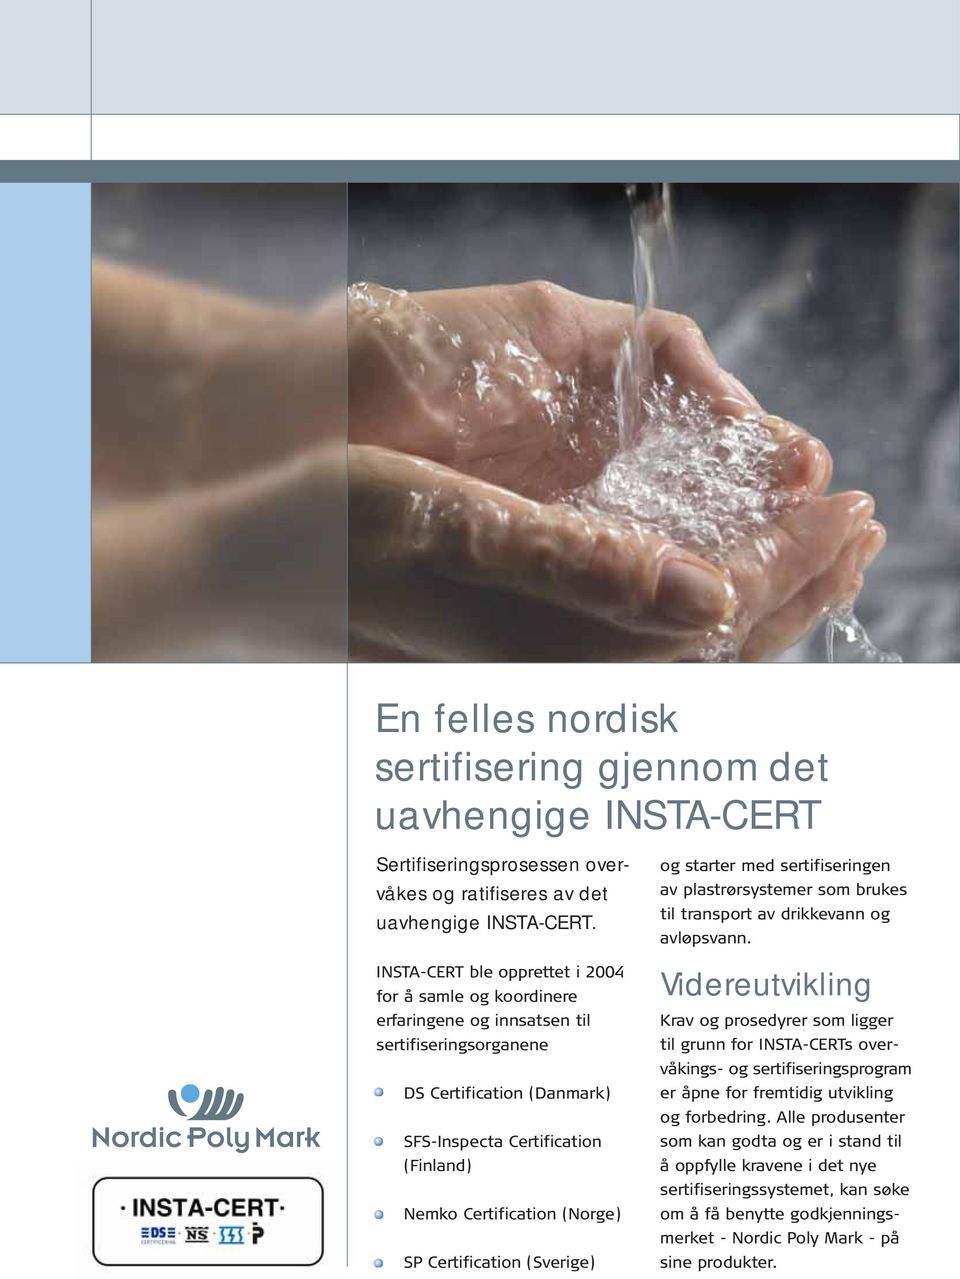 (Norge) SP Certification (Sverige) og starter med sertifiseringen av plastrørsystemer som brukes til transport av drikkevann og avløpsvann.